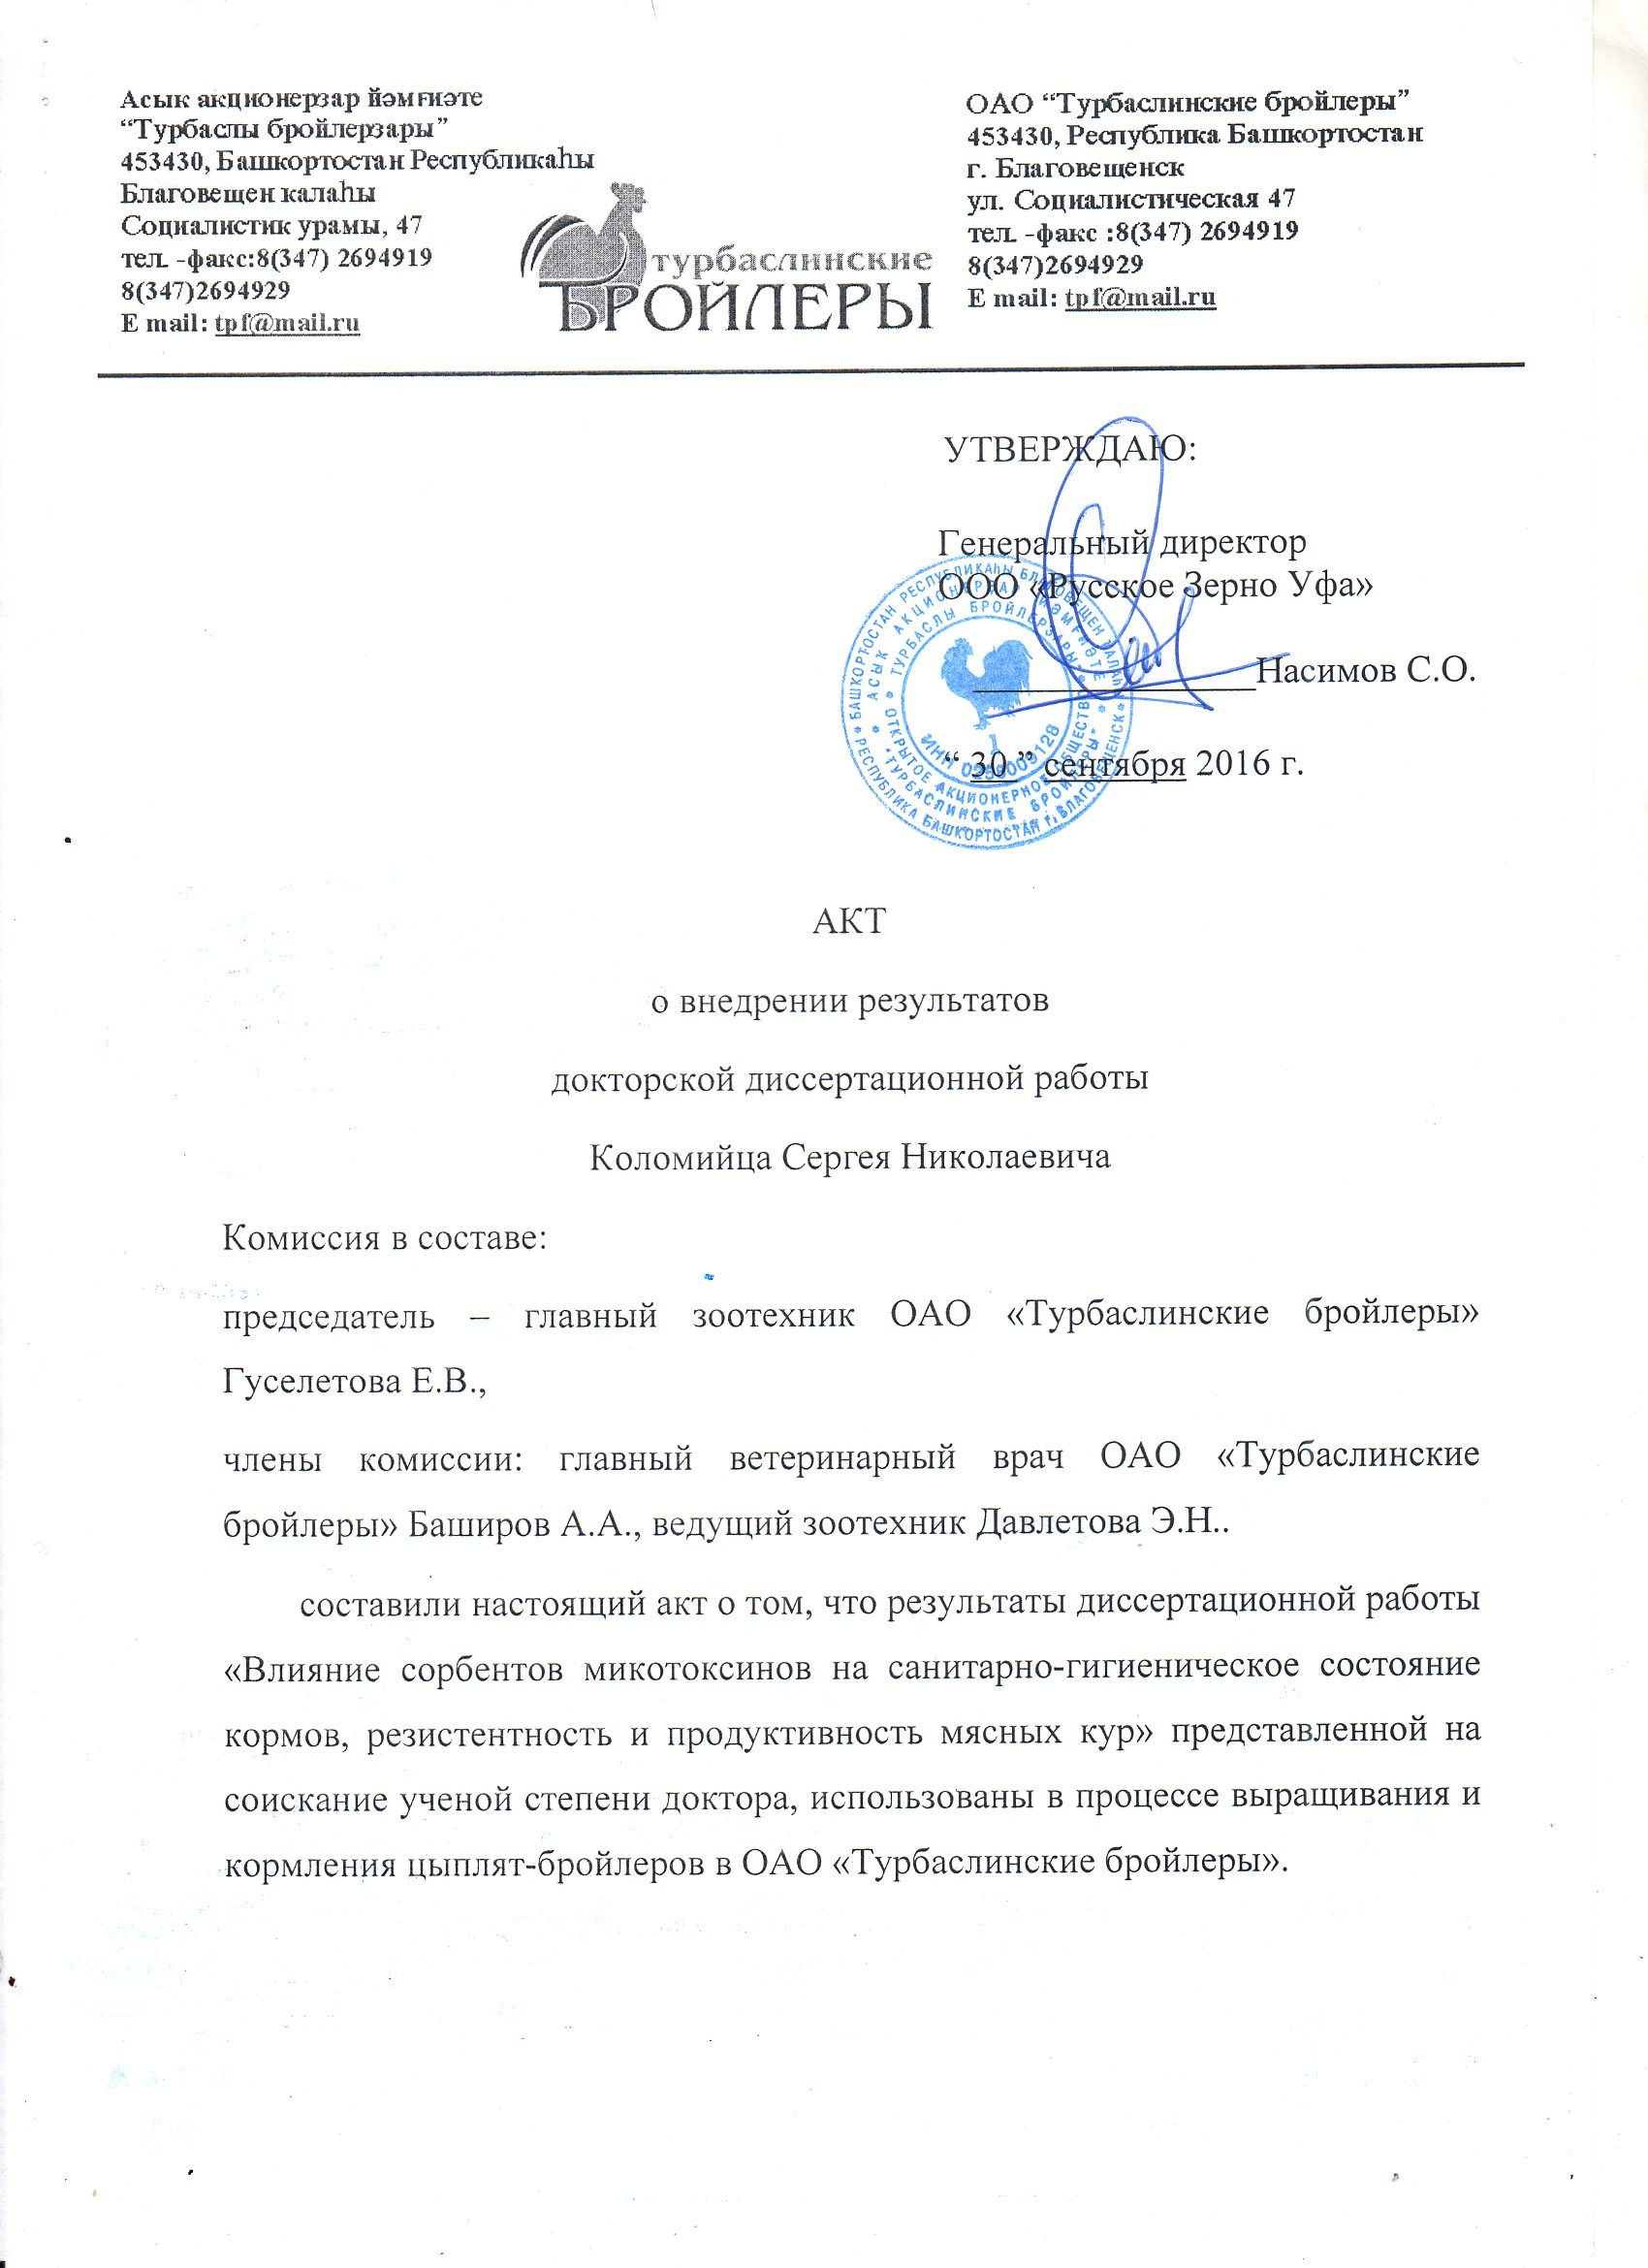 Акт о внедрении докторской диссертационной работы Коломийца Сергея Николаевича